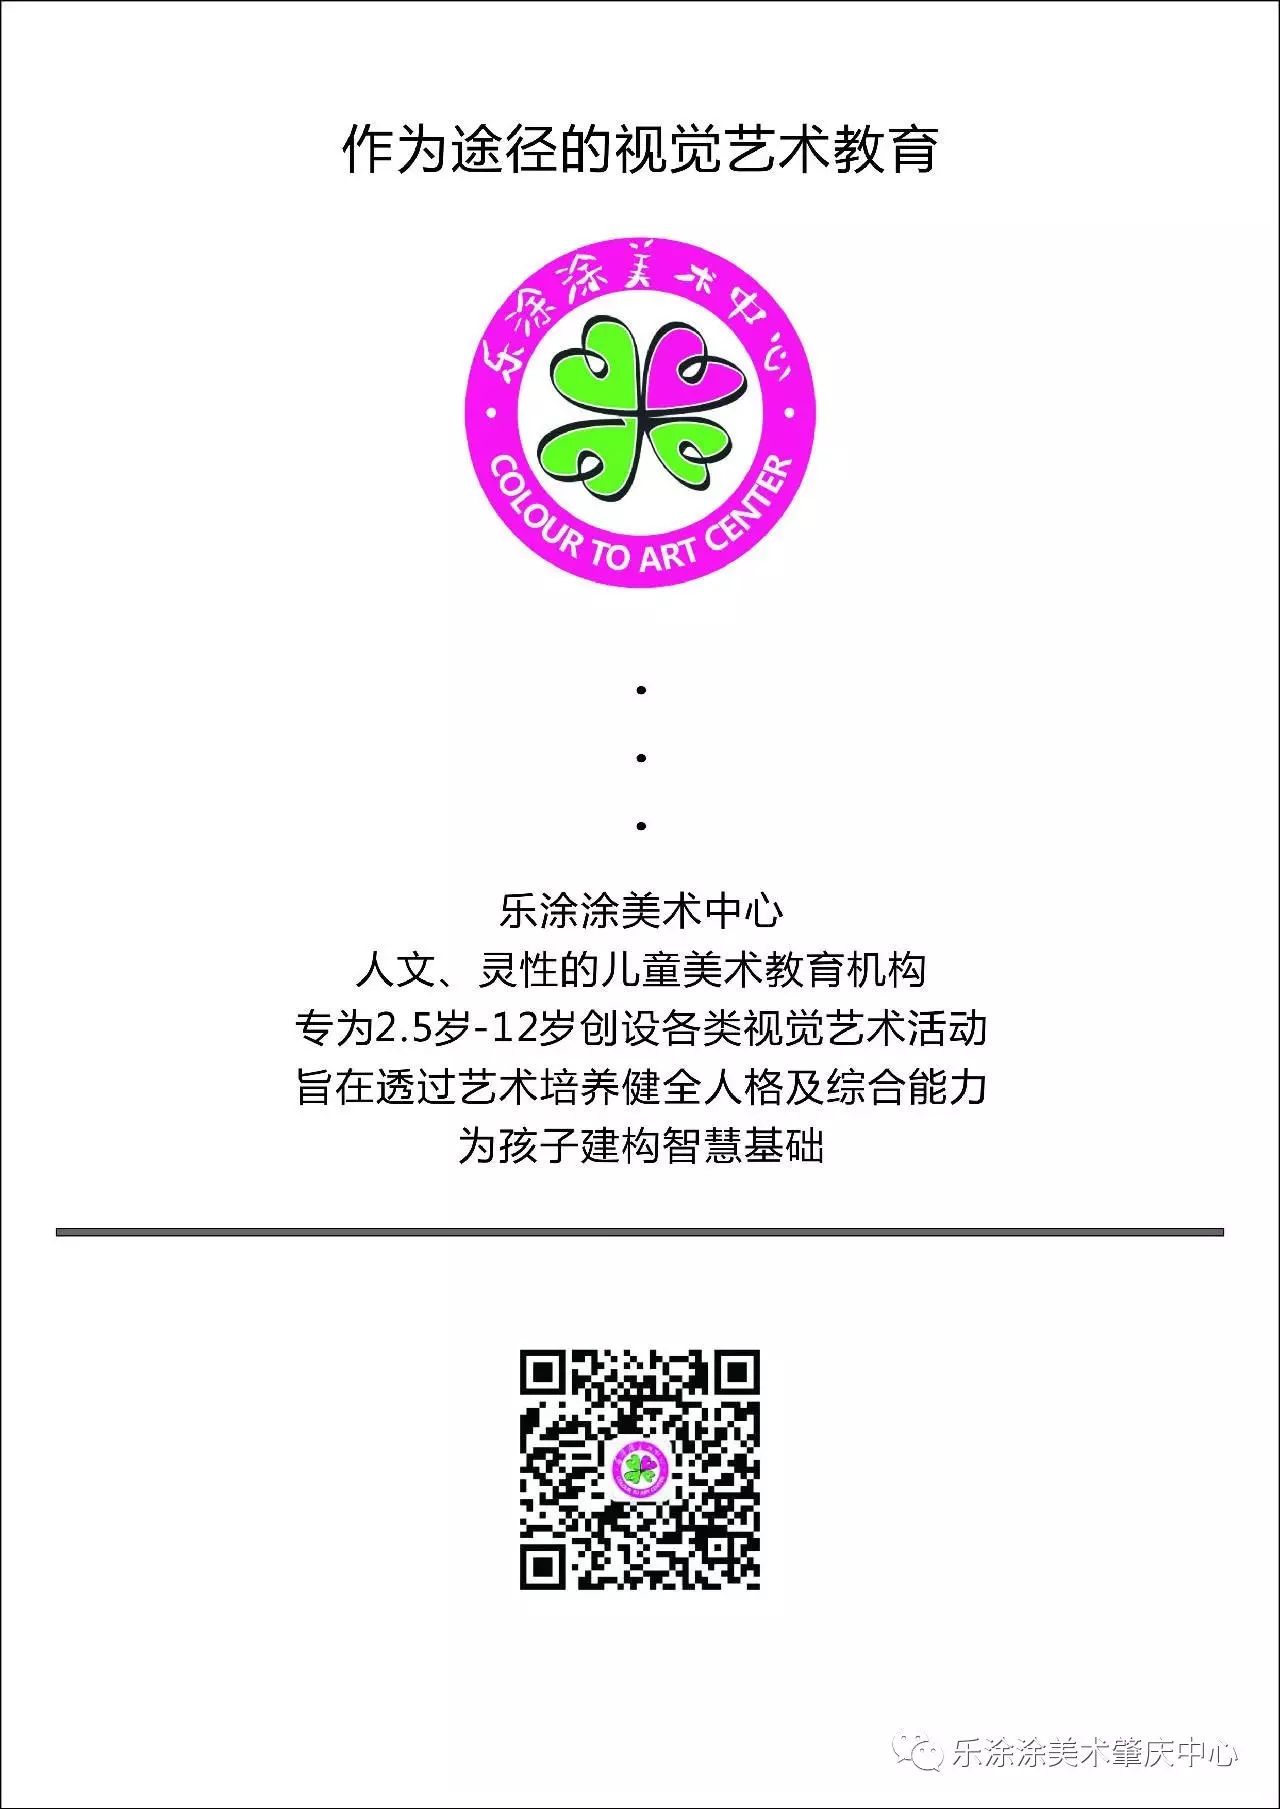 2015广州国际艺术博览会_广州国际艺术博览会_广州国际艺术博览会地址